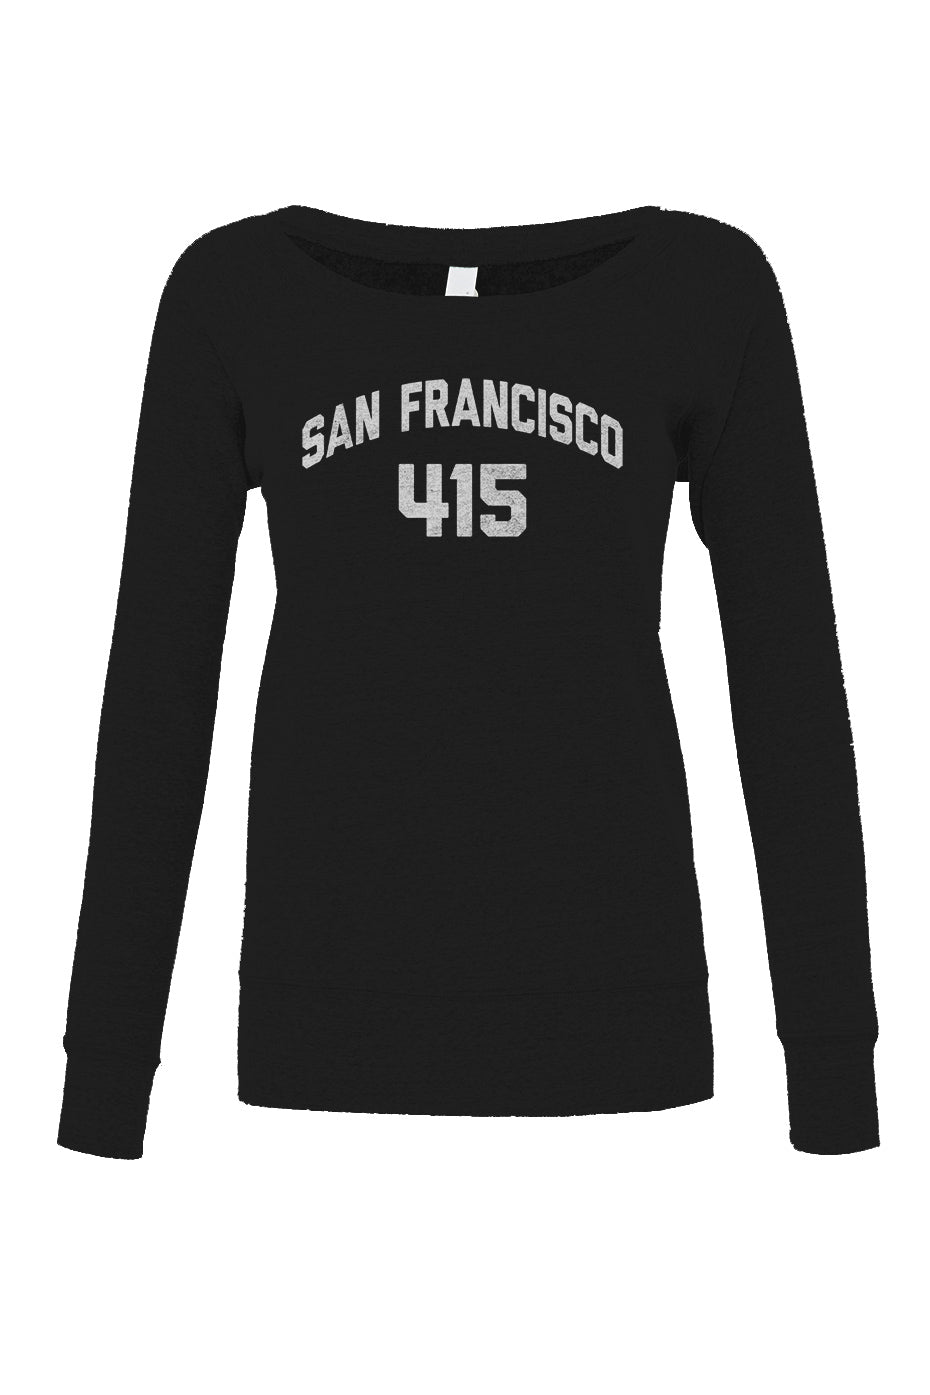 Women's San Francisco 415 Area Code Scoop Neck Fleece